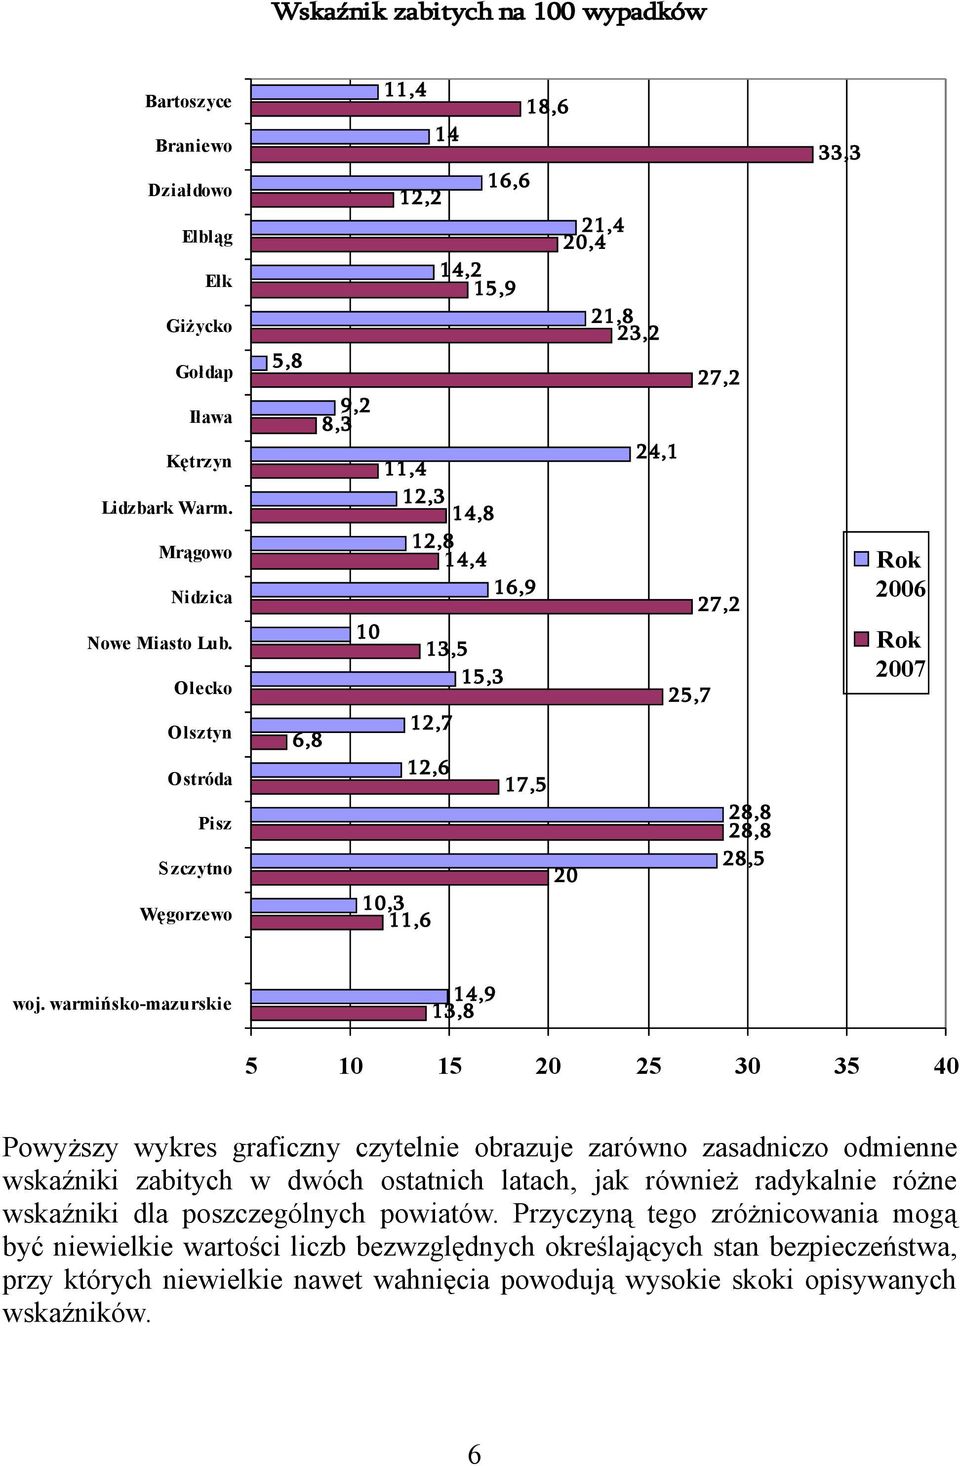 warmińsko-mazurskie,9,8 Powyższy wykres graficzny czytelnie obrazuje zarówno zasadniczo odmienne wskaźniki zabitych w dwóch ostatnich latach, jak również radykalnie